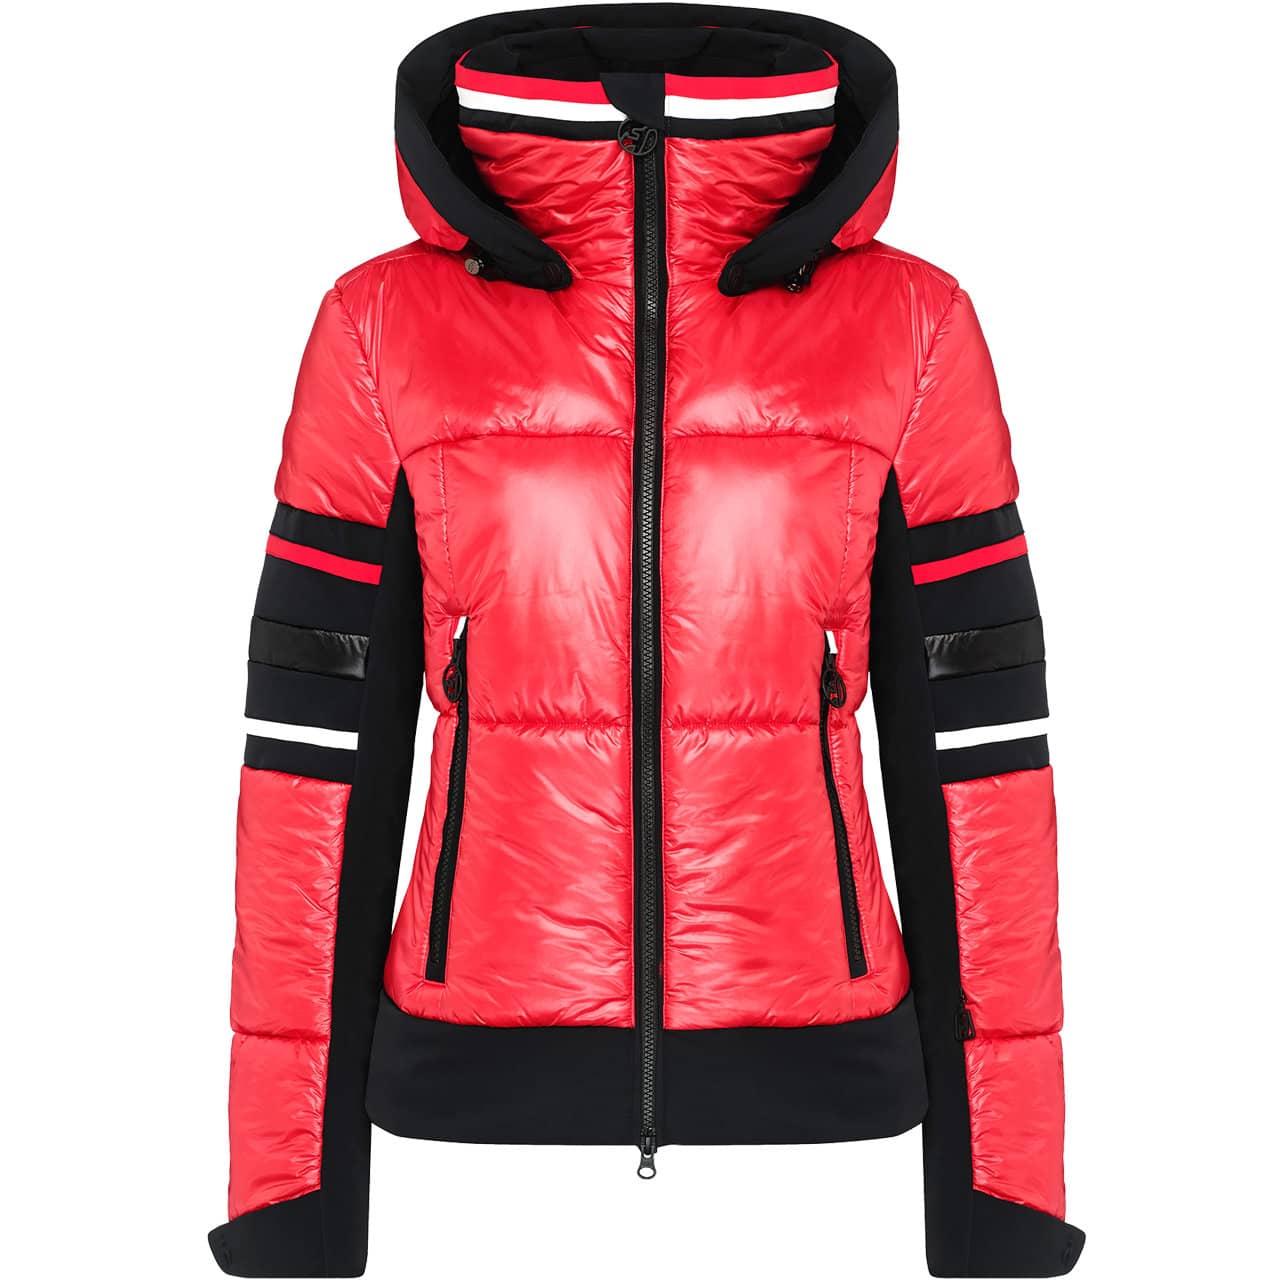 Toni Sailer Women Jacket SADIE pink red |Ladies skiwear | Skiwear ...